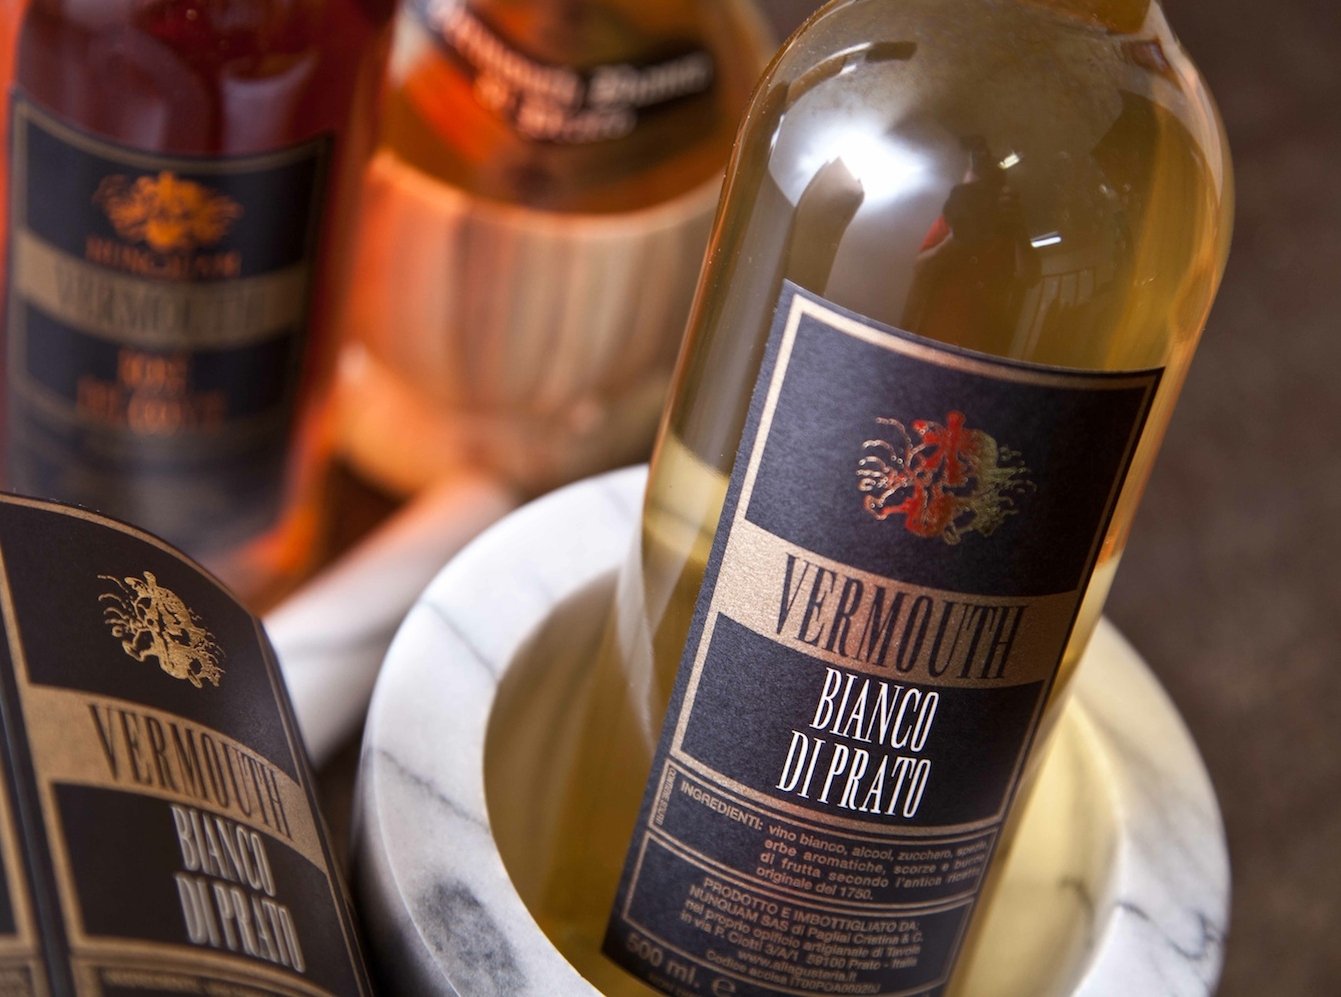 Vermouth de vin blanc